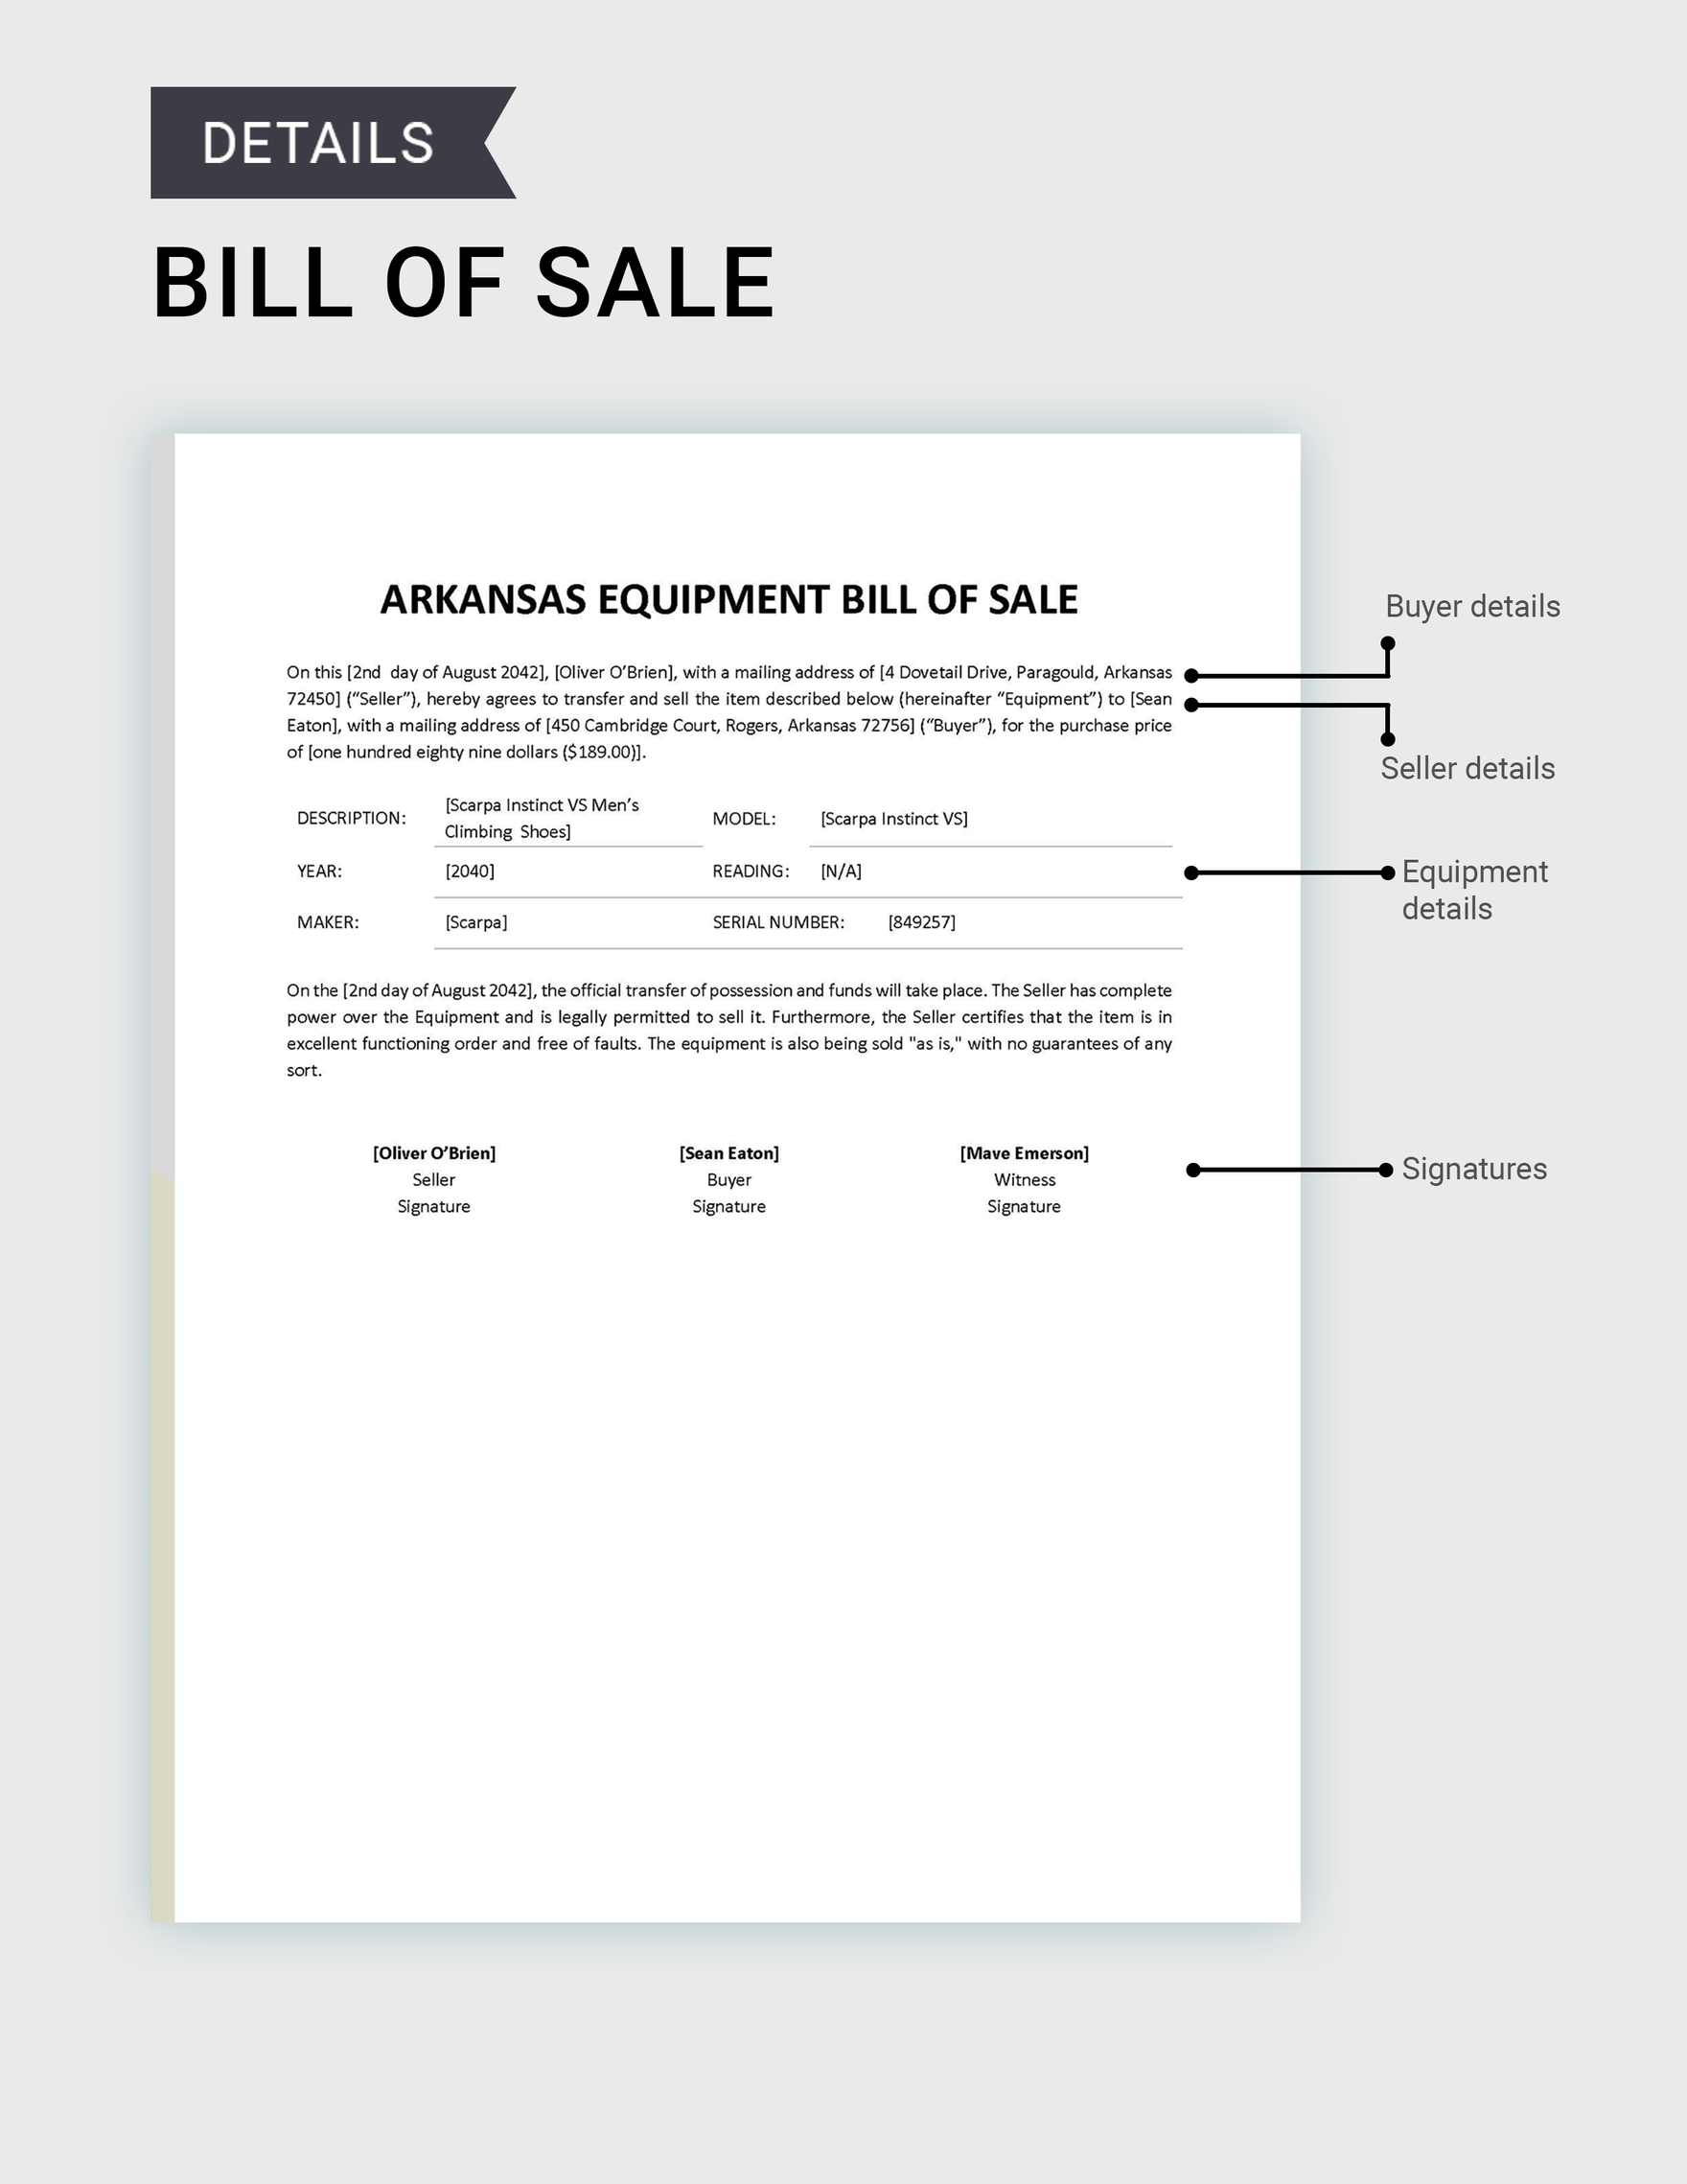 Arkansas Equipment Bill of Sale Template